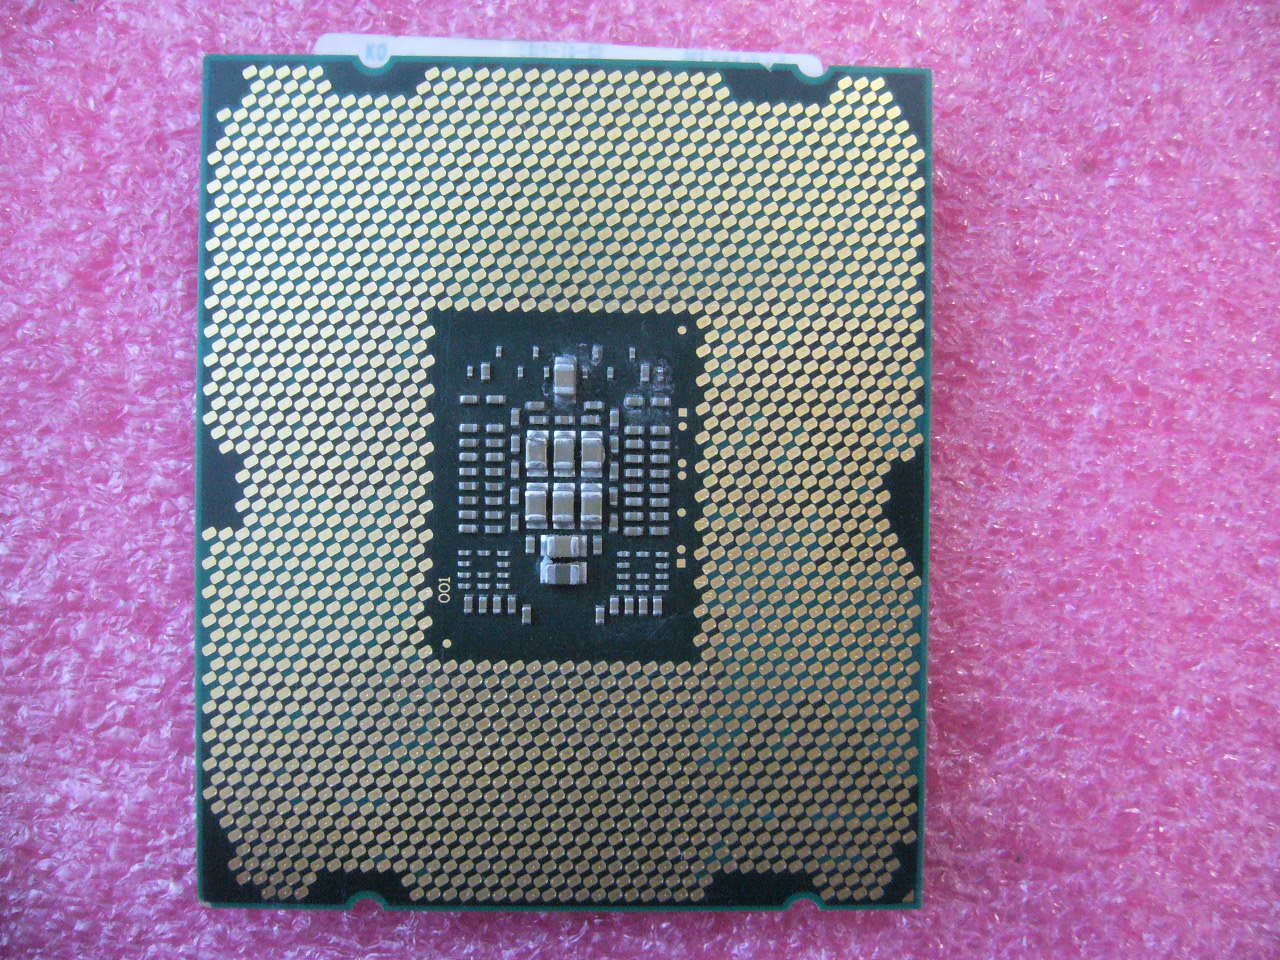 QTY 1x Intel CPU E5-2609 CPU 4-Cores 2.4Ghz LGA2011 SR0LA - zum Schließen ins Bild klicken